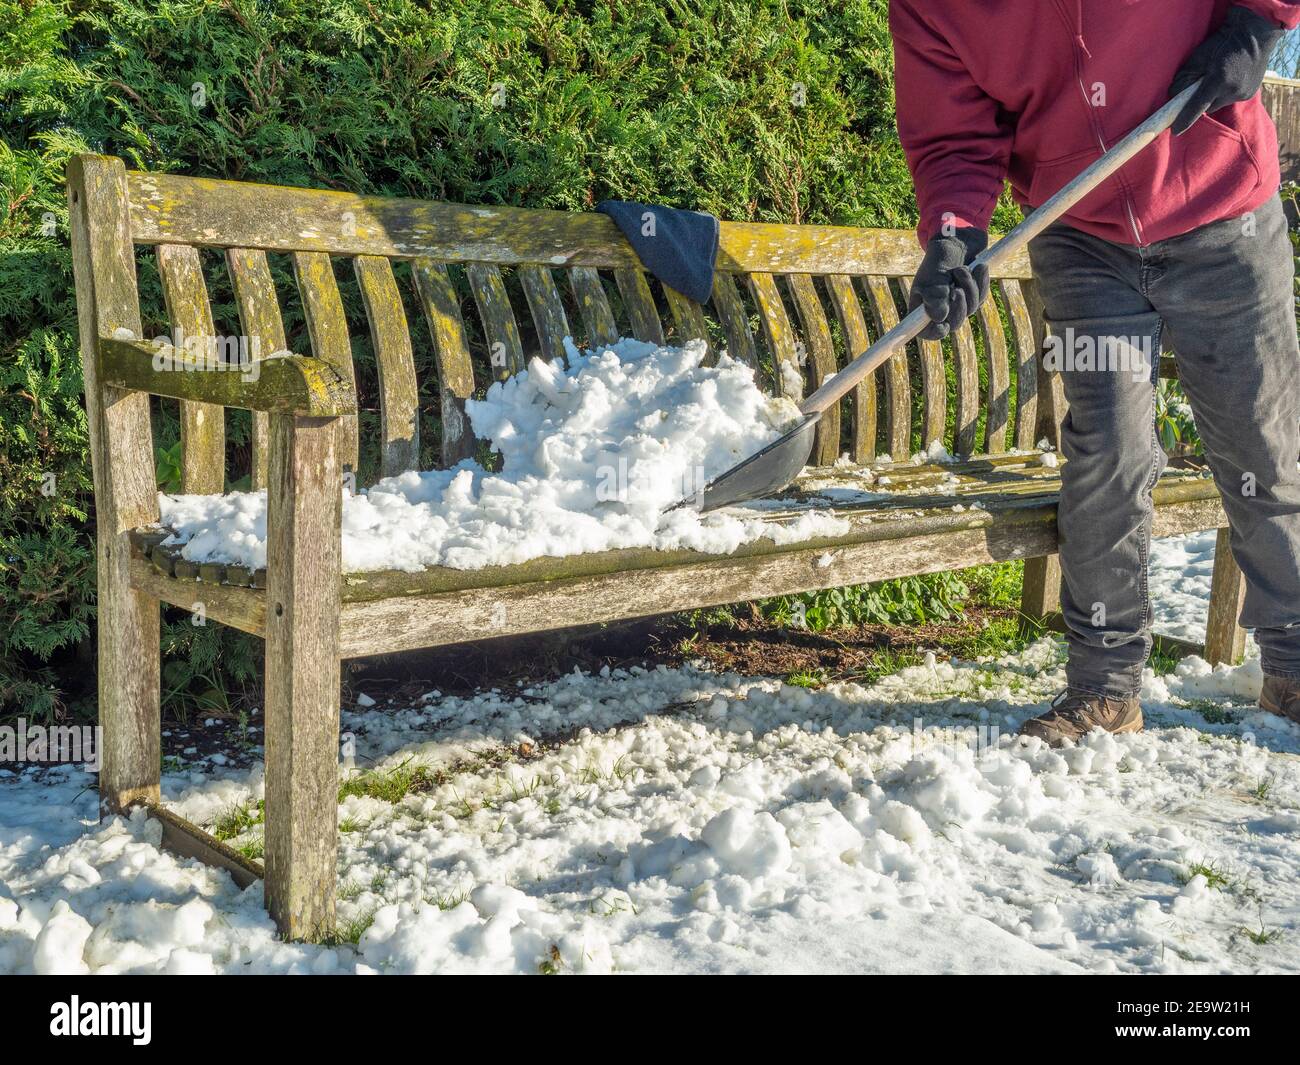 Nahaufnahme einer Person, die Stiefel und Handschuhe trägt, mit einer Schaufel, um eine Schicht Schnee vom Sitz eines Holzparks / Garten / Hof / Bank zu reinigen. Stockfoto